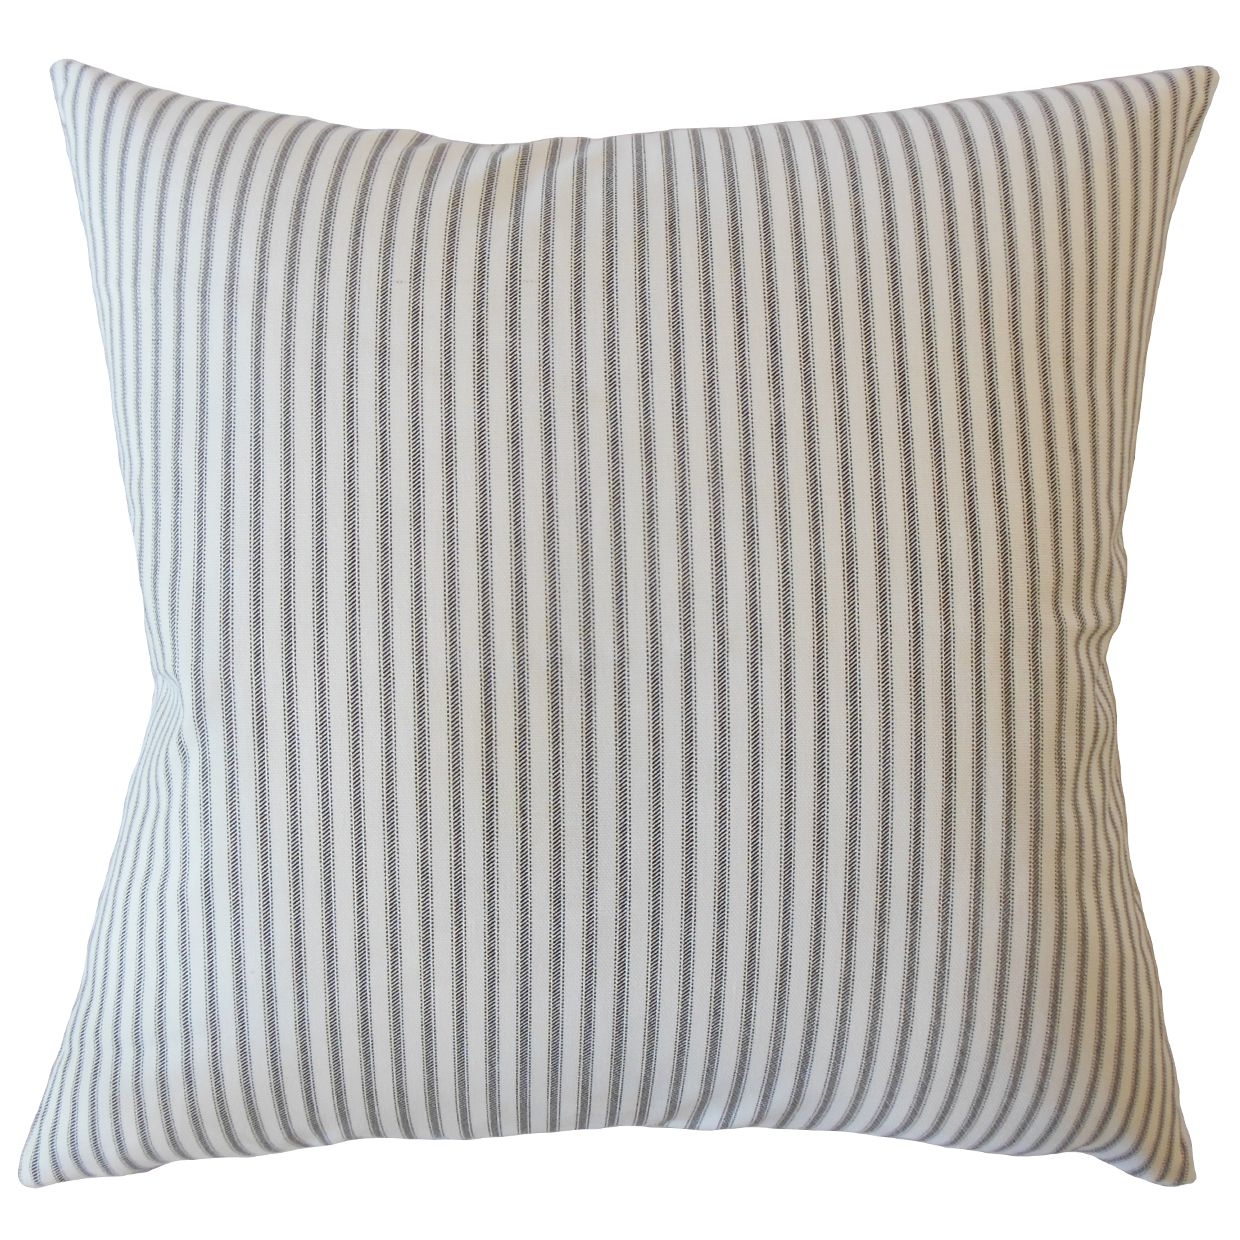 Ticking Stripe Pillow, Navy, 22" x 22" - Image 0